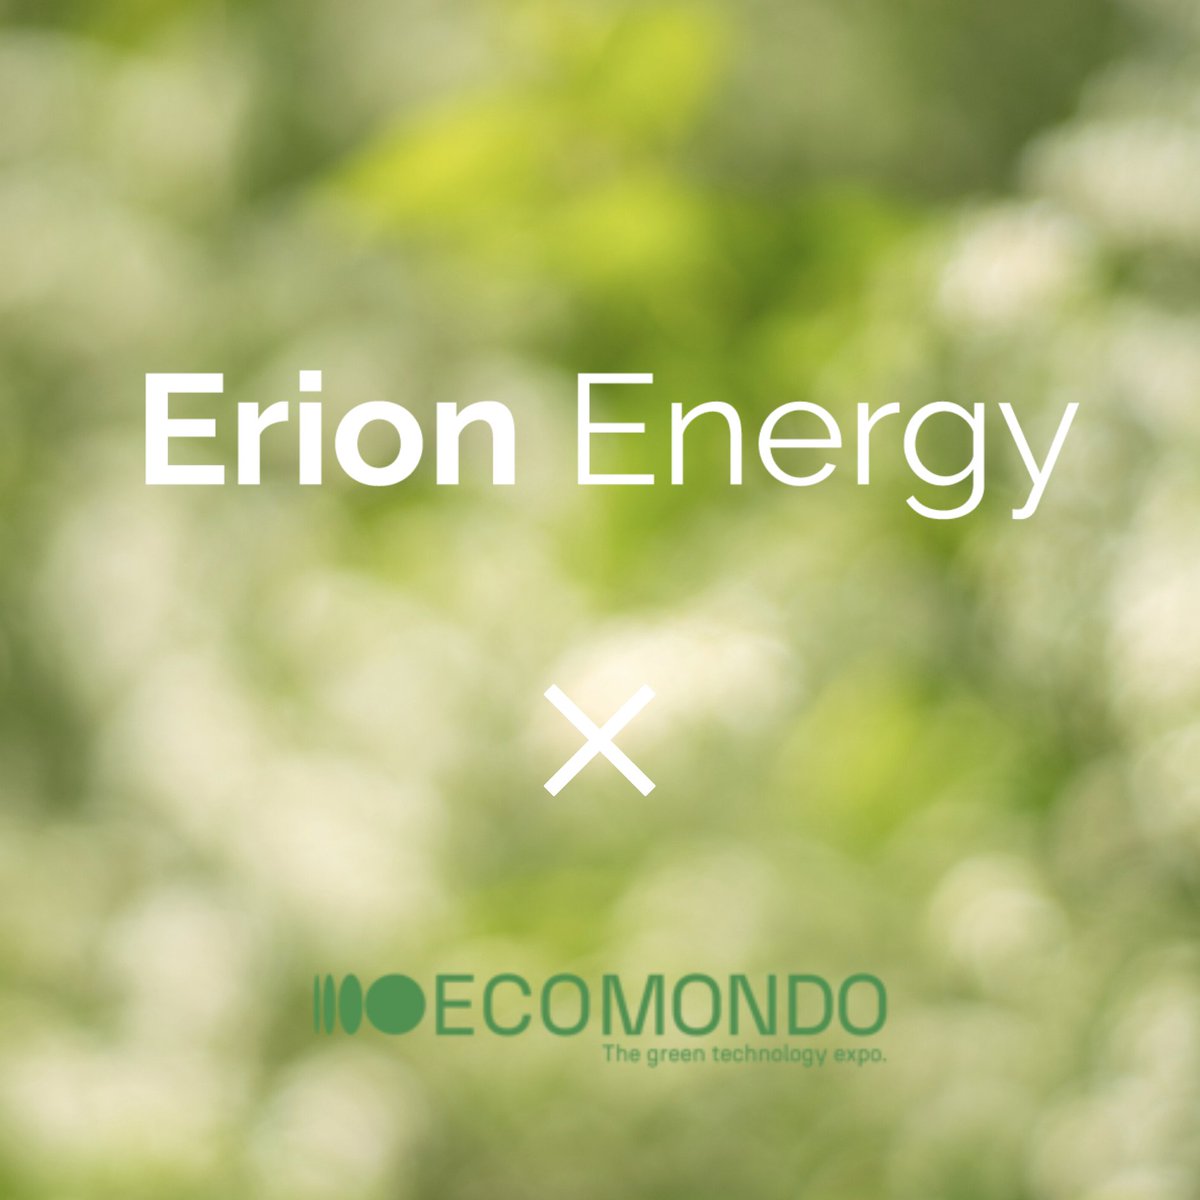 Dal 7 al 10 novembre Erion Energy sarà presente ad @Ecomondo con l’iniziativa “Energia al Cubo” e la “scatolina gialla” presso lo Stand 200 della Hall Sud. Si potrà trovare anche un punto di raccolta dove i visitatori più virtuosi potranno conferire le proprie pile esauste.